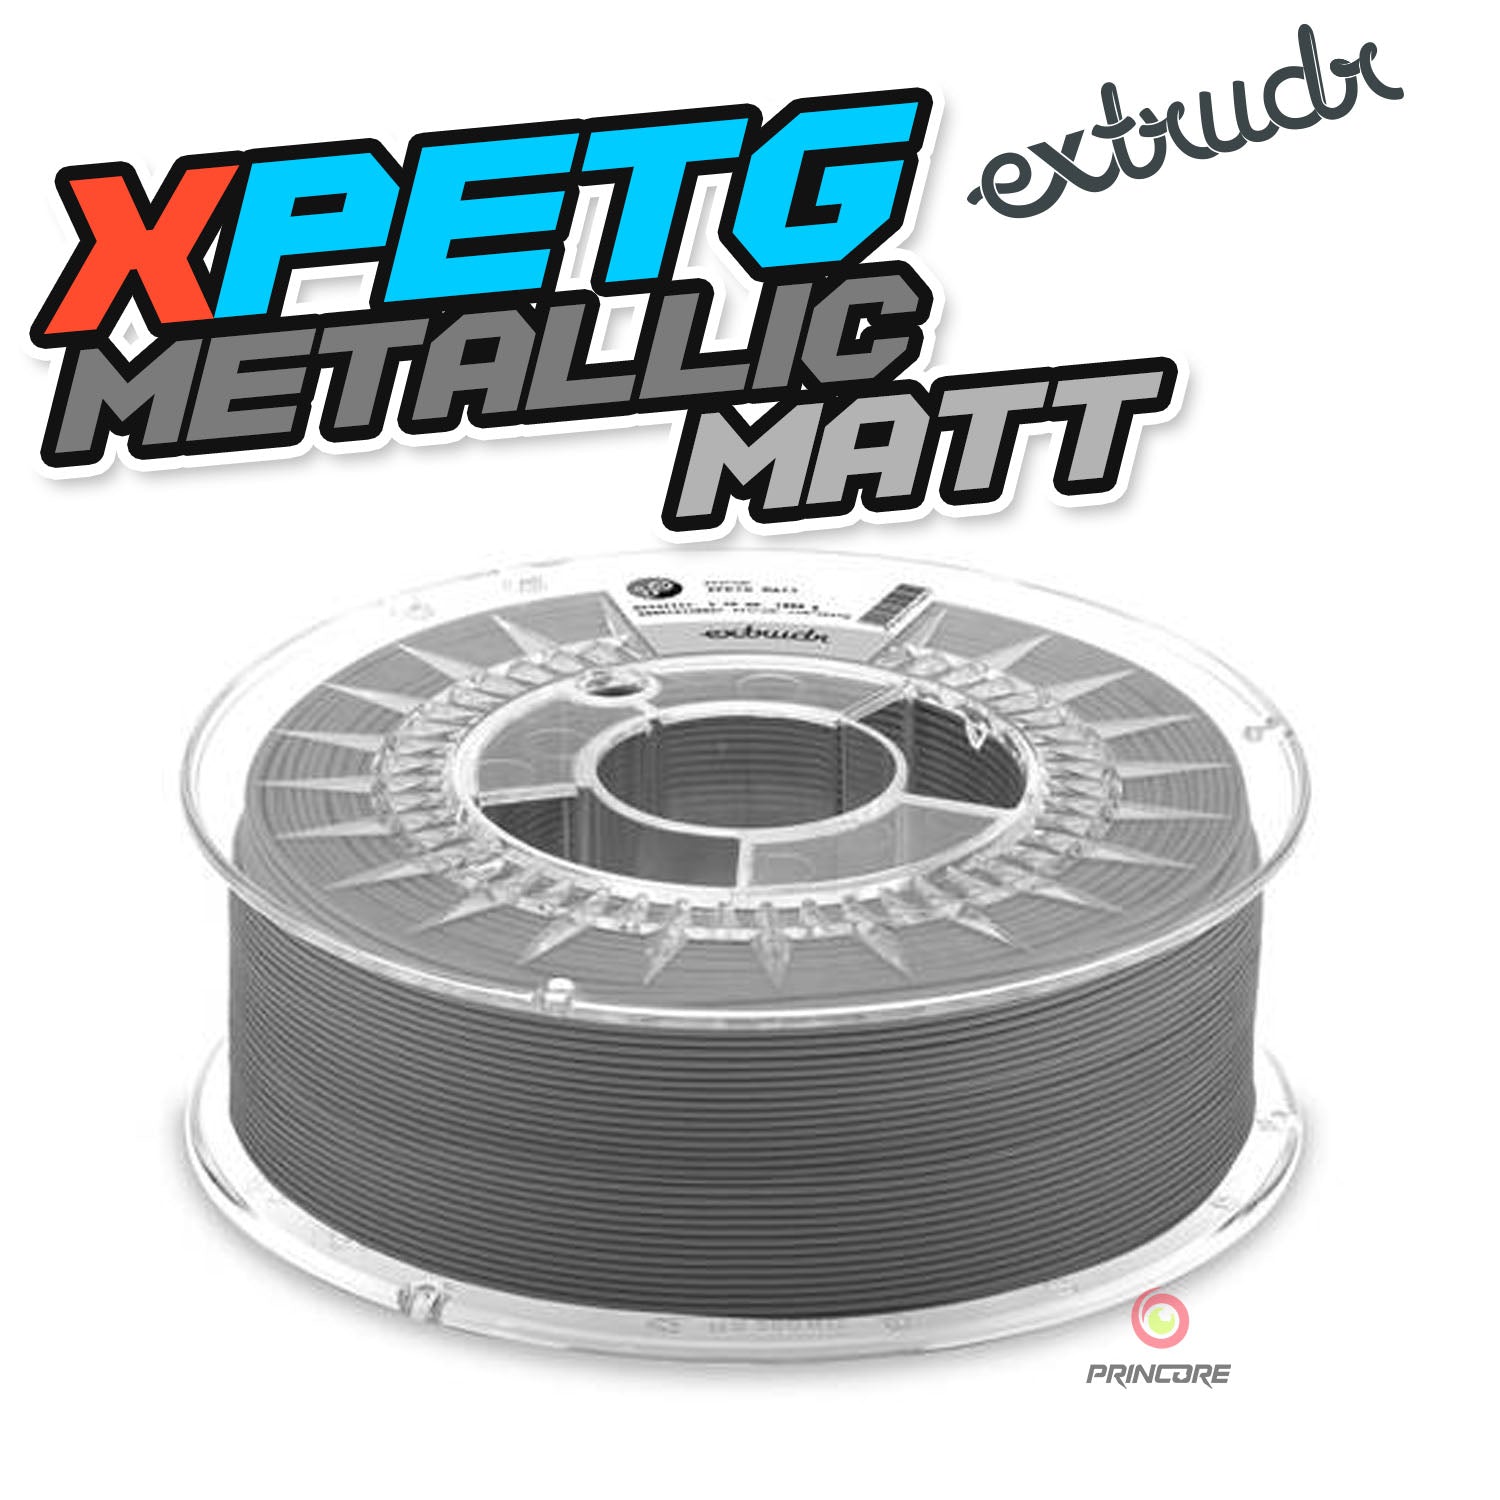 Extrudr XPETG - Metallic Matt [1.75mm] (29,90€/Kg)